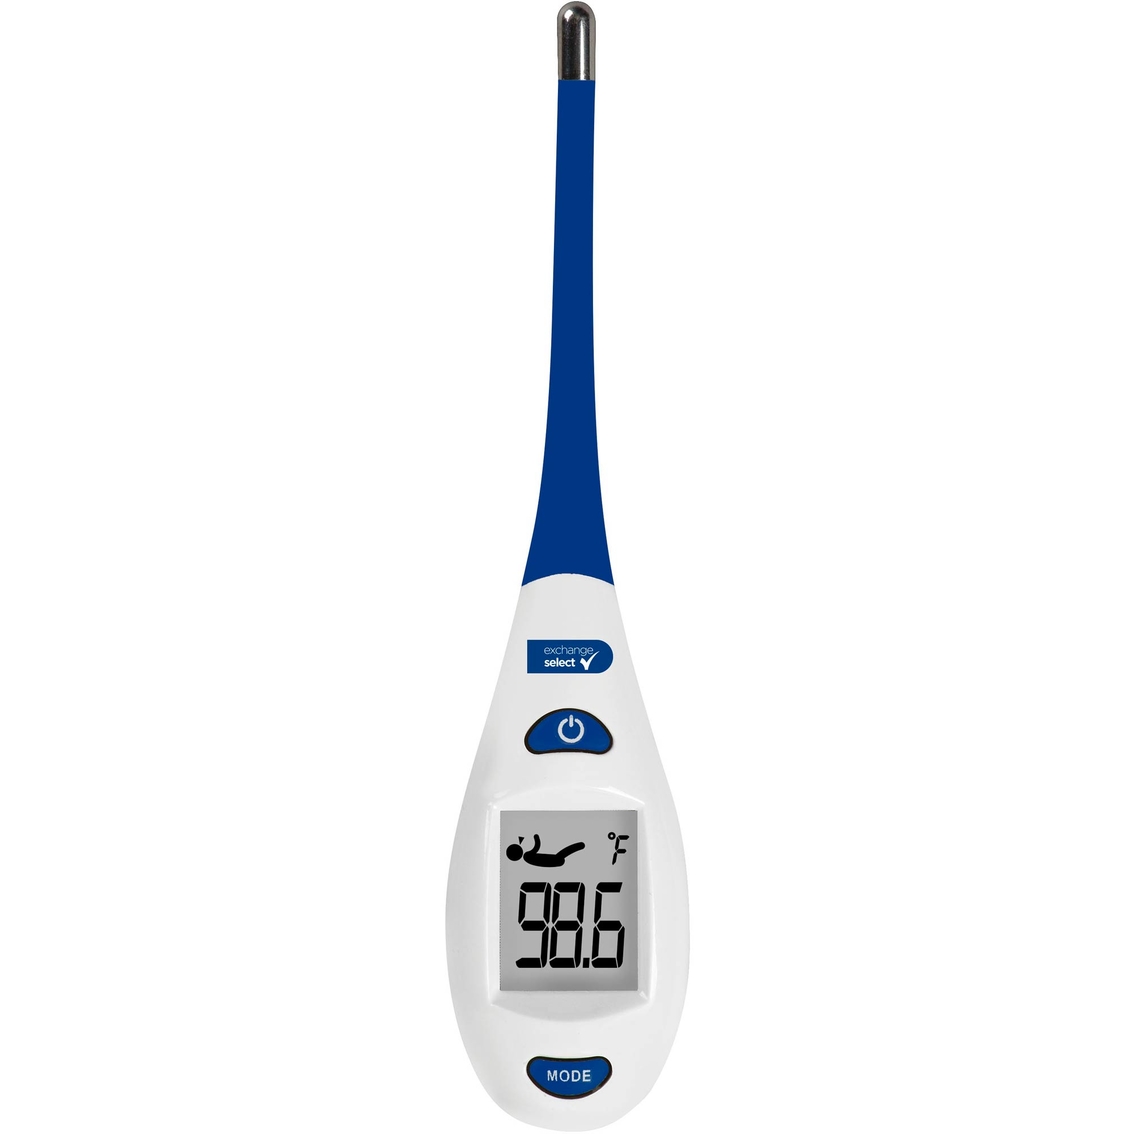 EAGLE PEAK Digital Thermometer